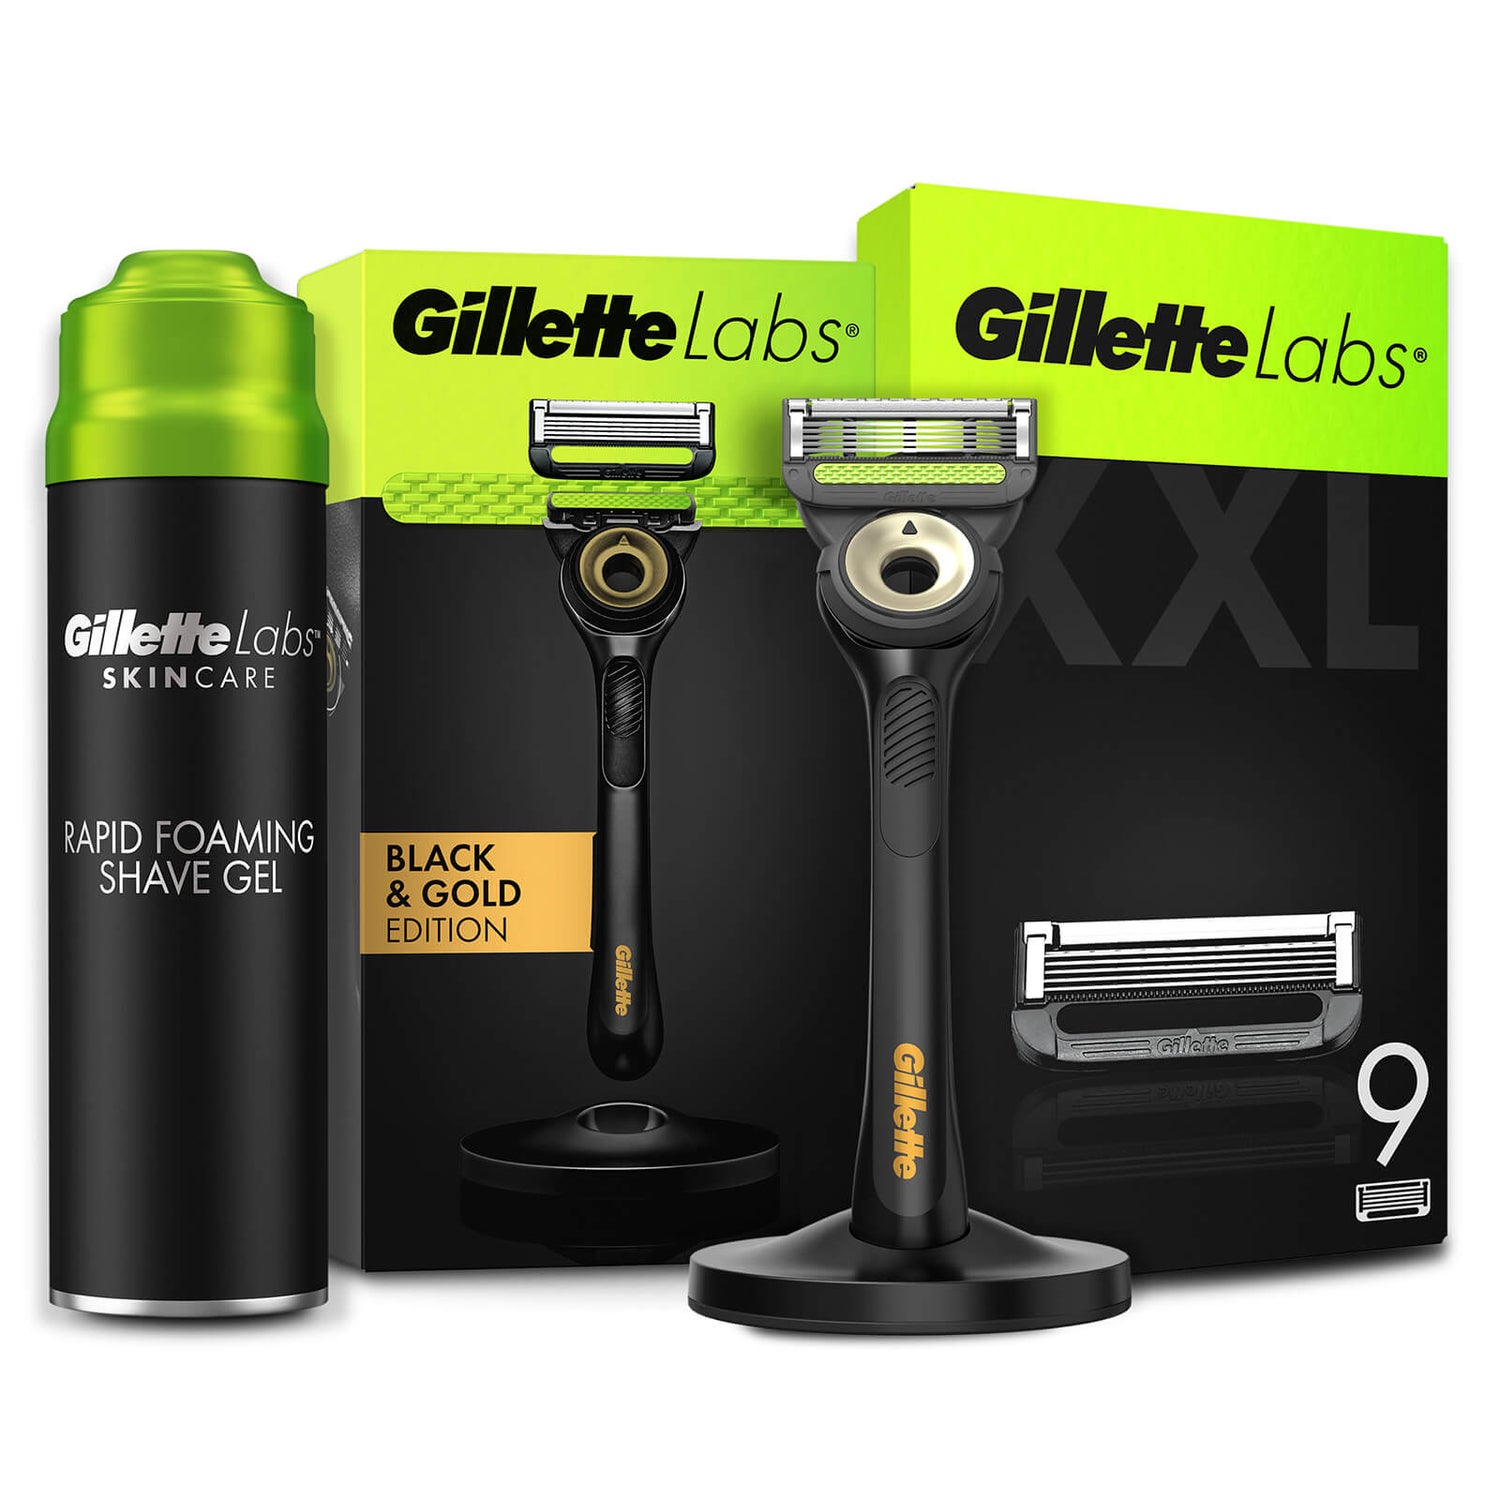 Gillette Labs Black & Gold Razor, Shaving Gel and 9 Count Blades